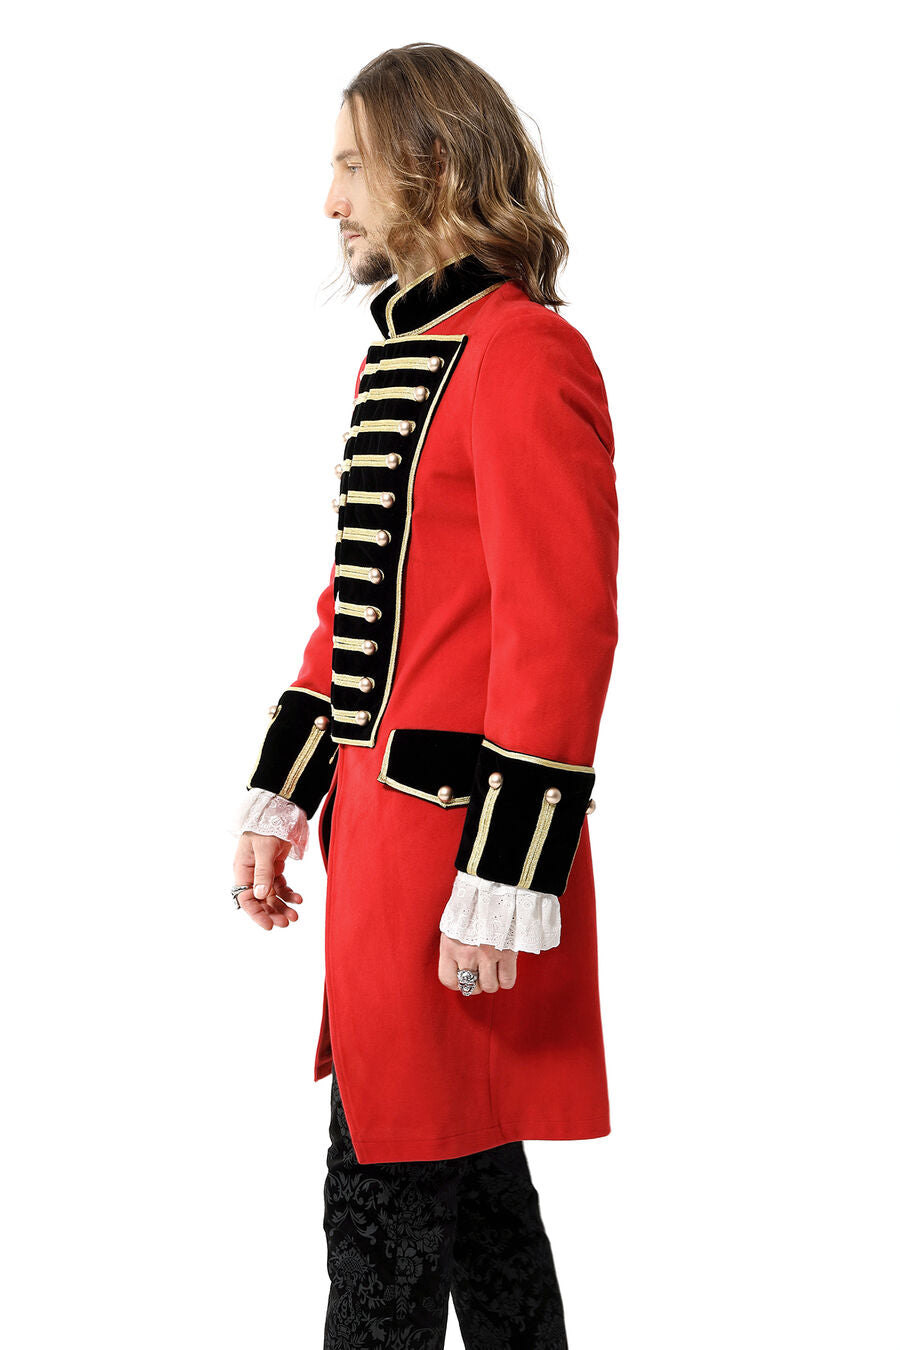 Manteau officier britannique